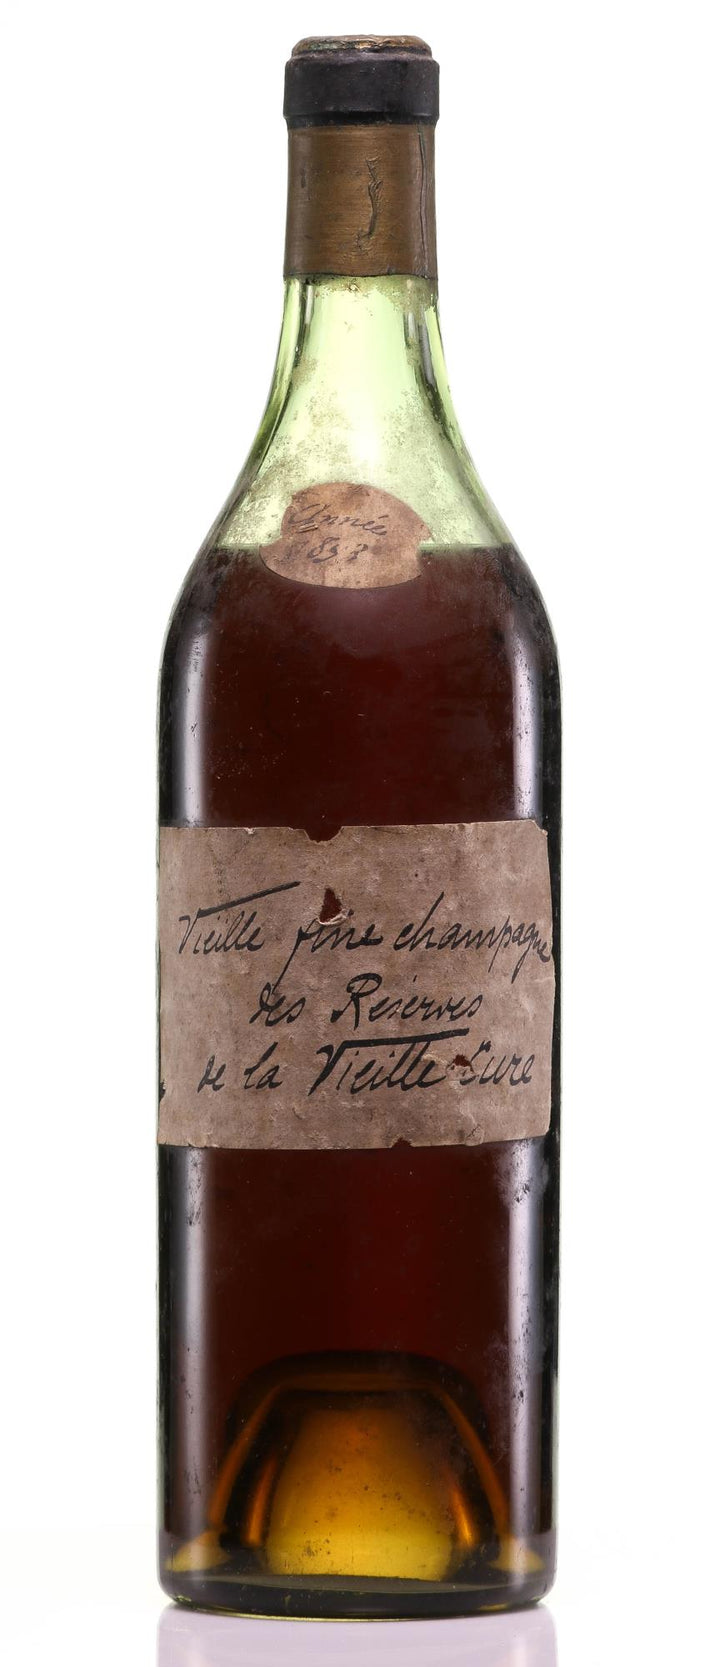 1853 Les Reserve de la Vieille Cure Vieille Fine Champagne Cognac (96+ Wine Spectator Rating) - Rue Pinard